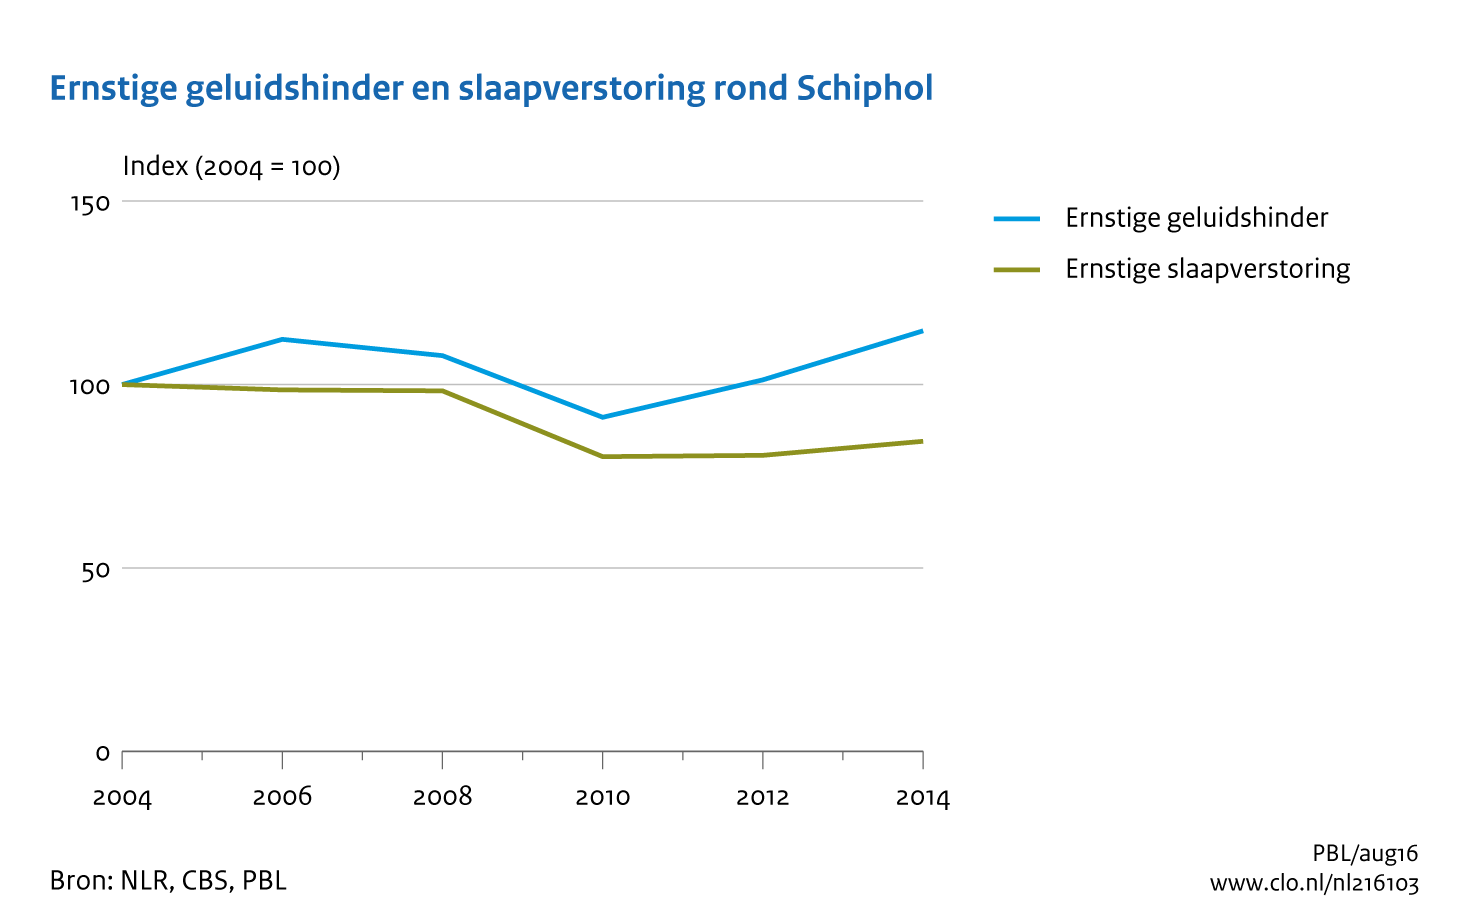 Figuur Ernstig hinder en slaapverstoring omwonenden van Schiphol, 2004-2014. In de rest van de tekst wordt deze figuur uitgebreider uitgelegd.